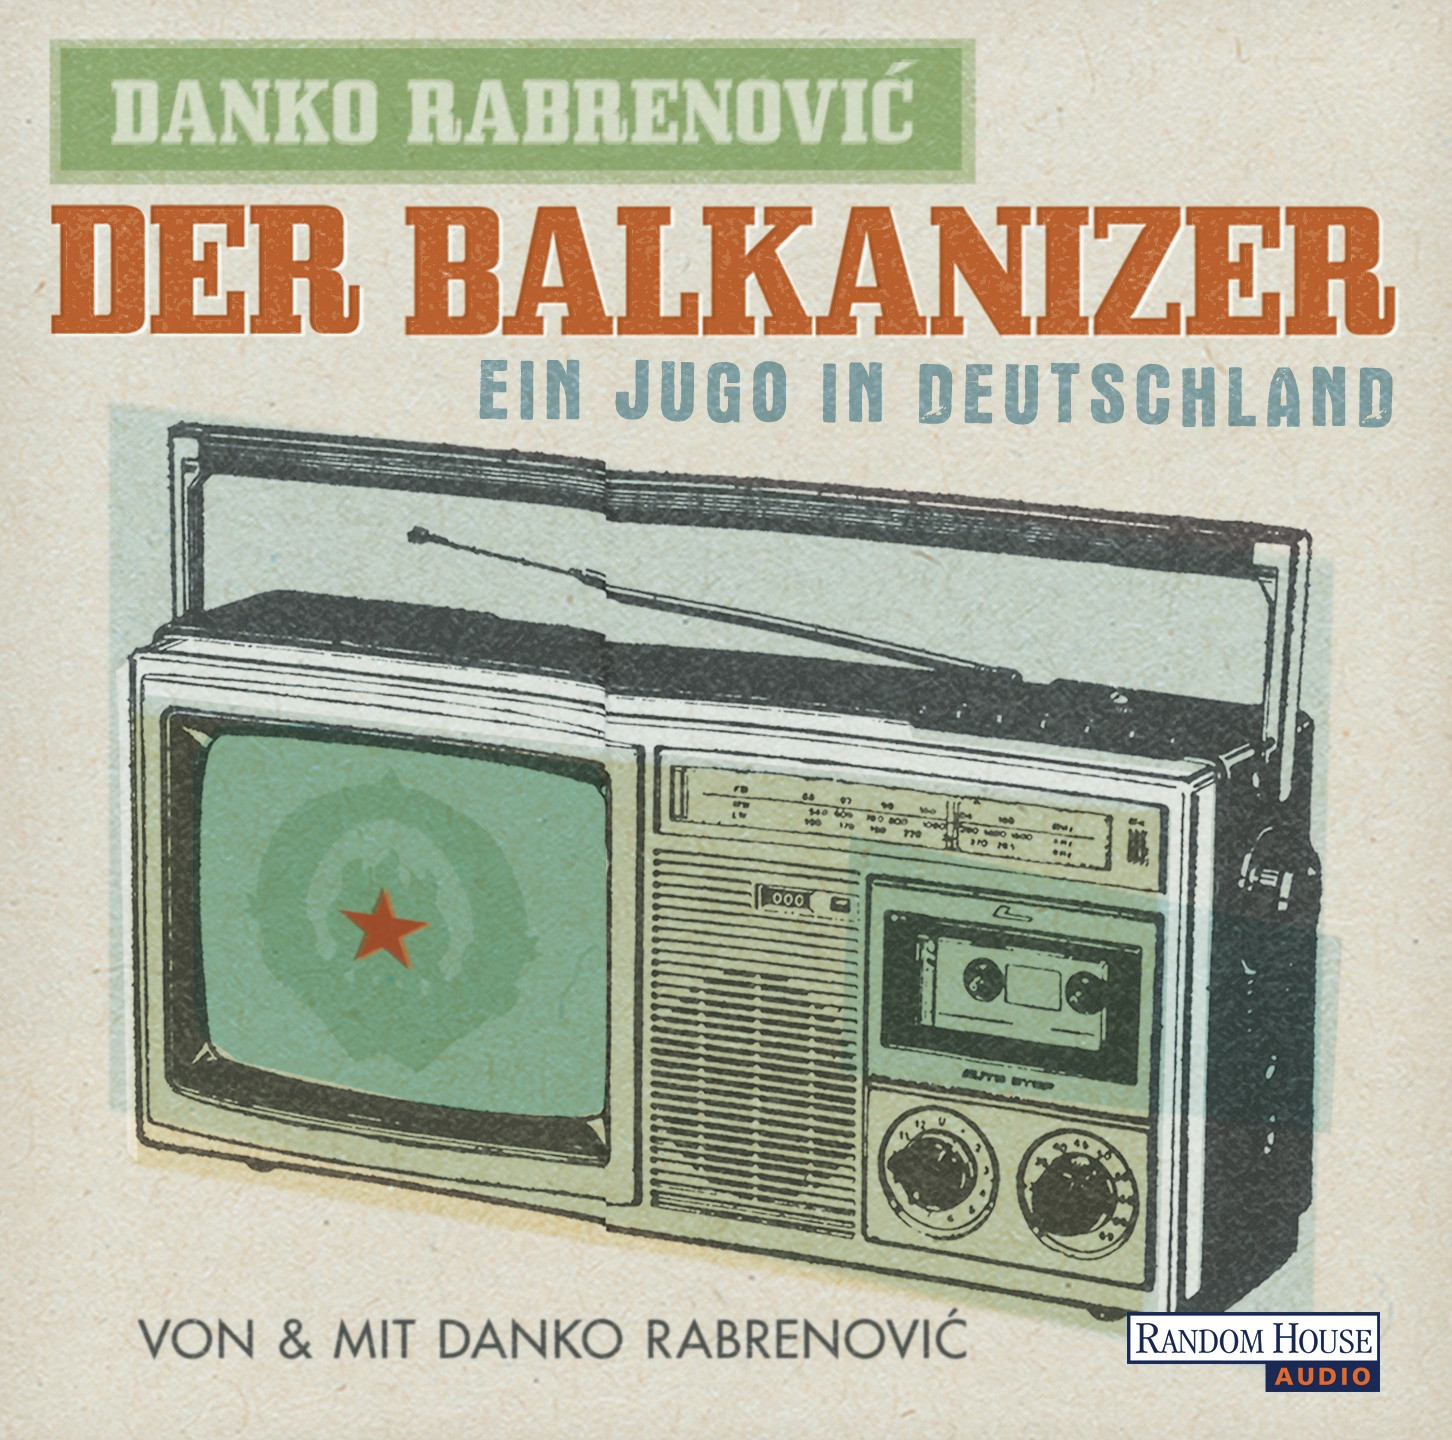 Danko Rabrenovic - Der Balkanizer